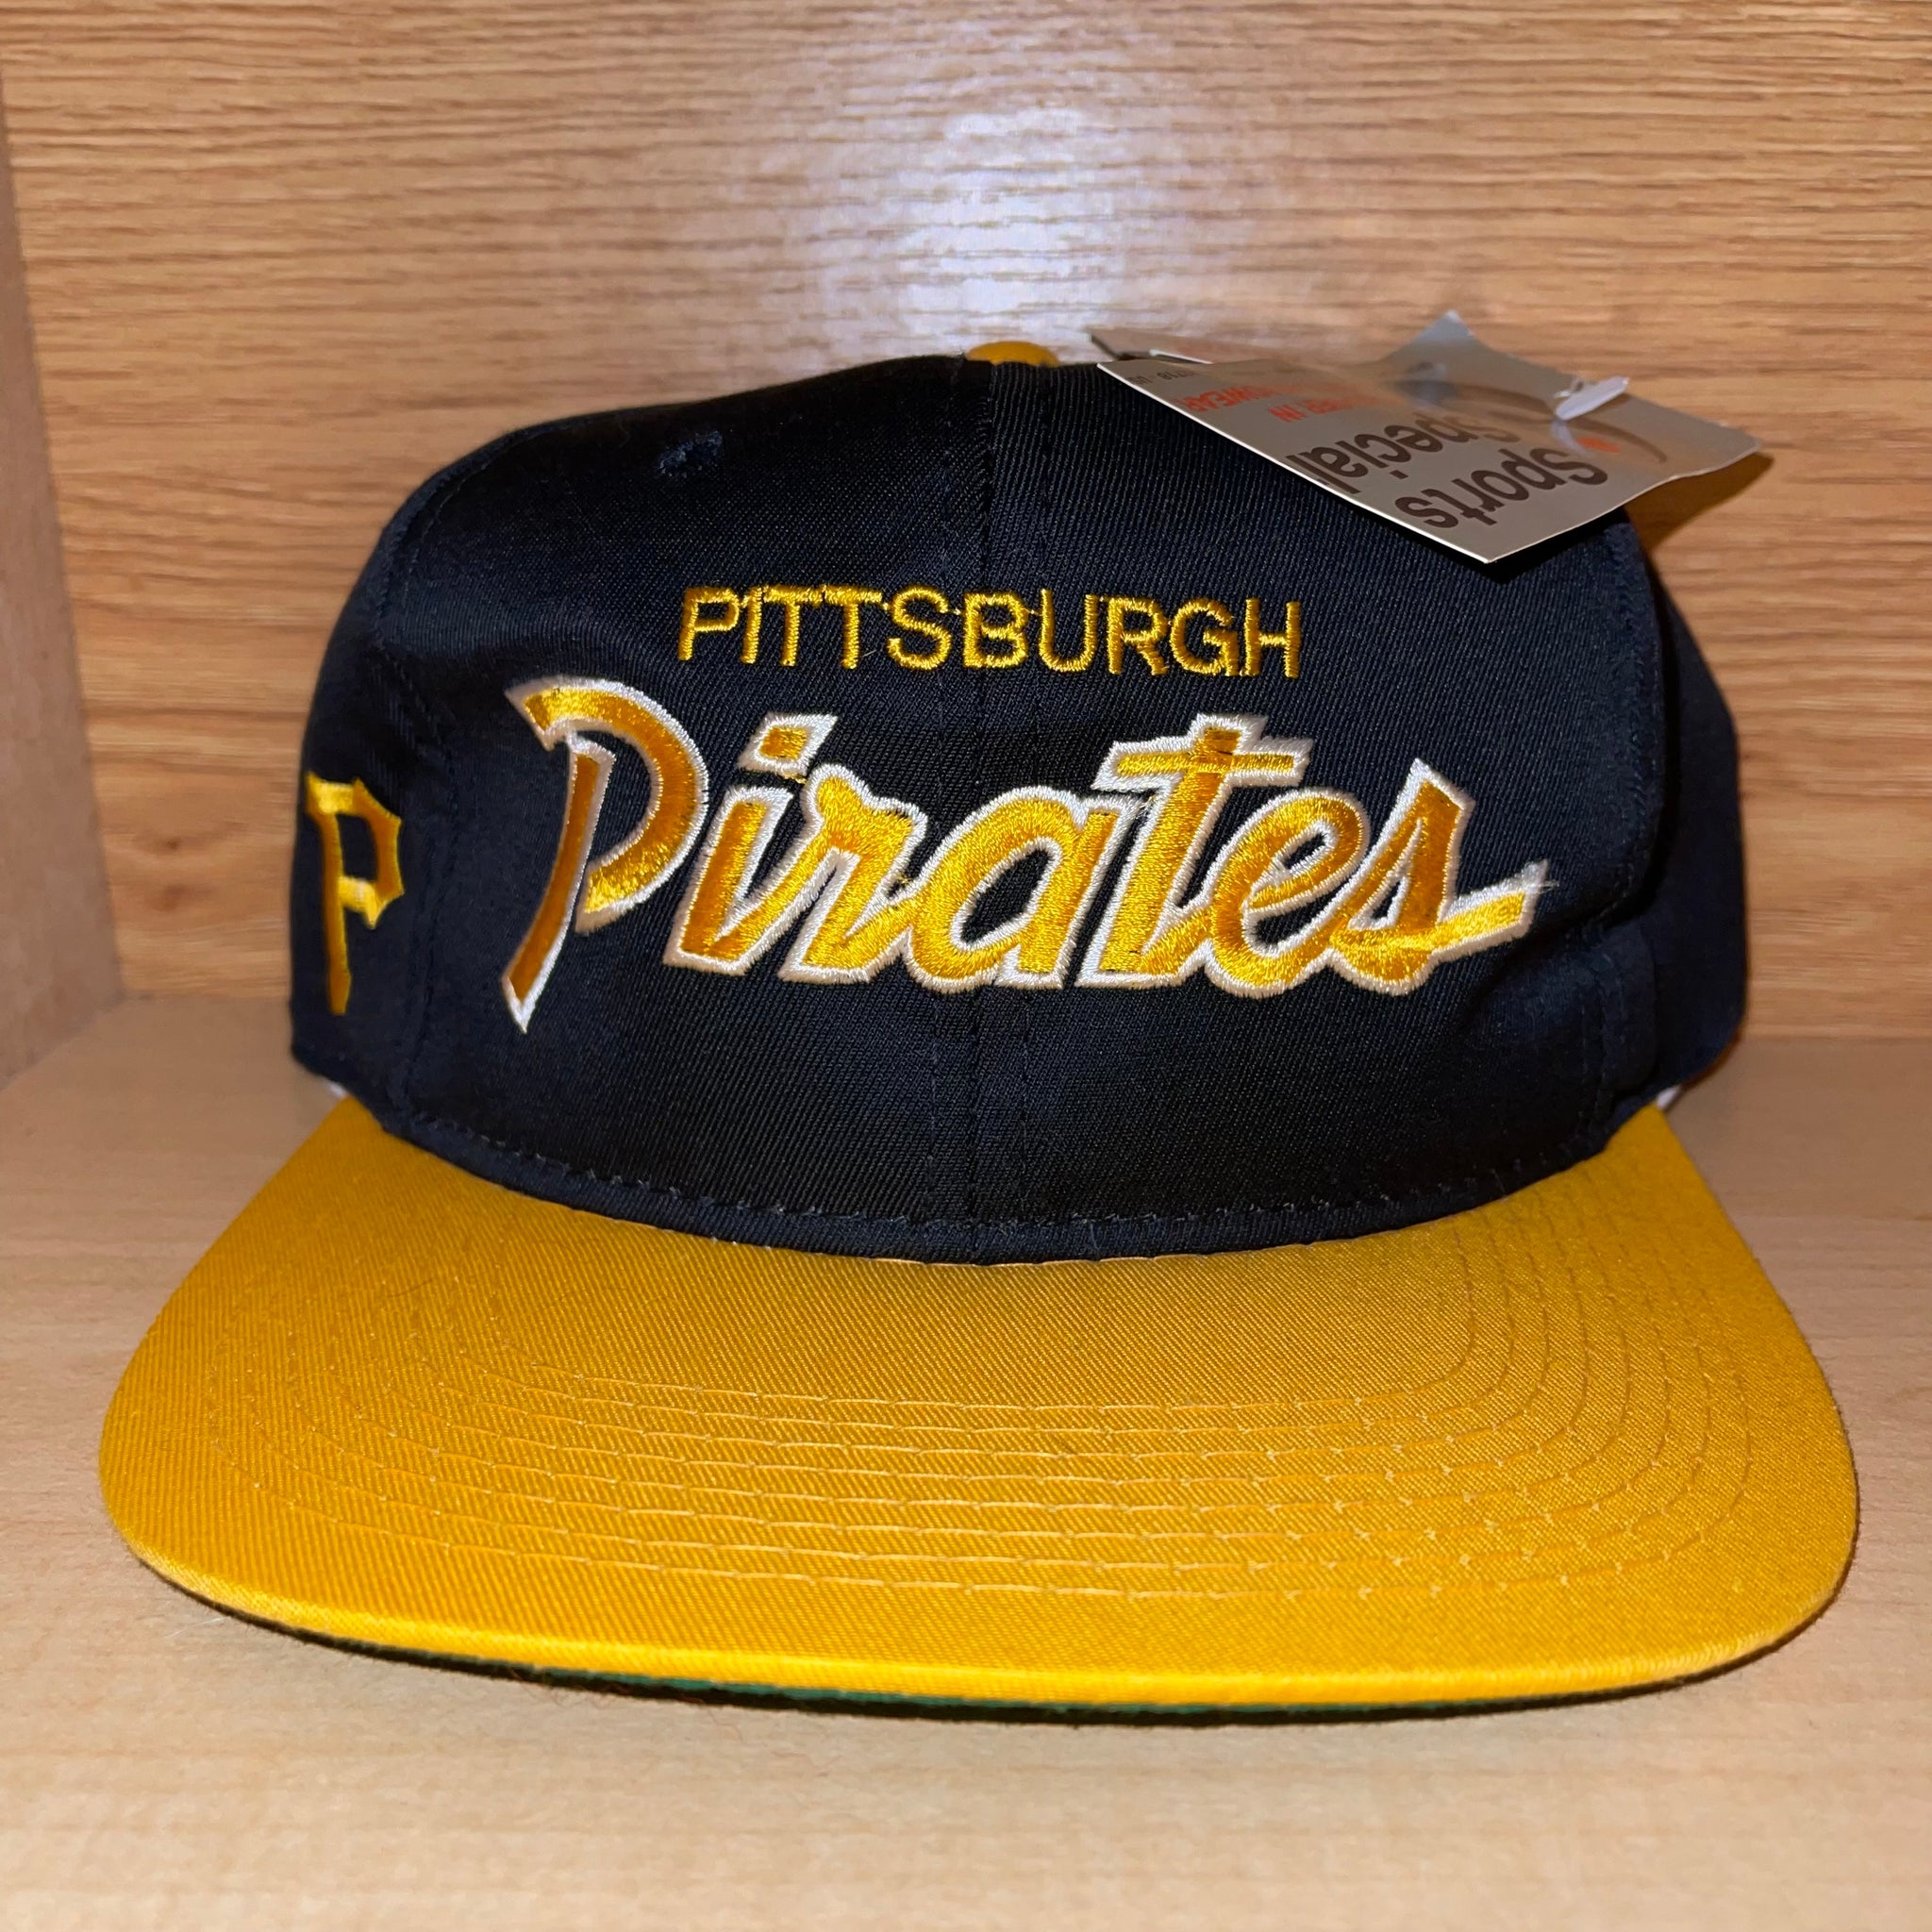 Pittsburgh Pirates Vintage Baseball Hat